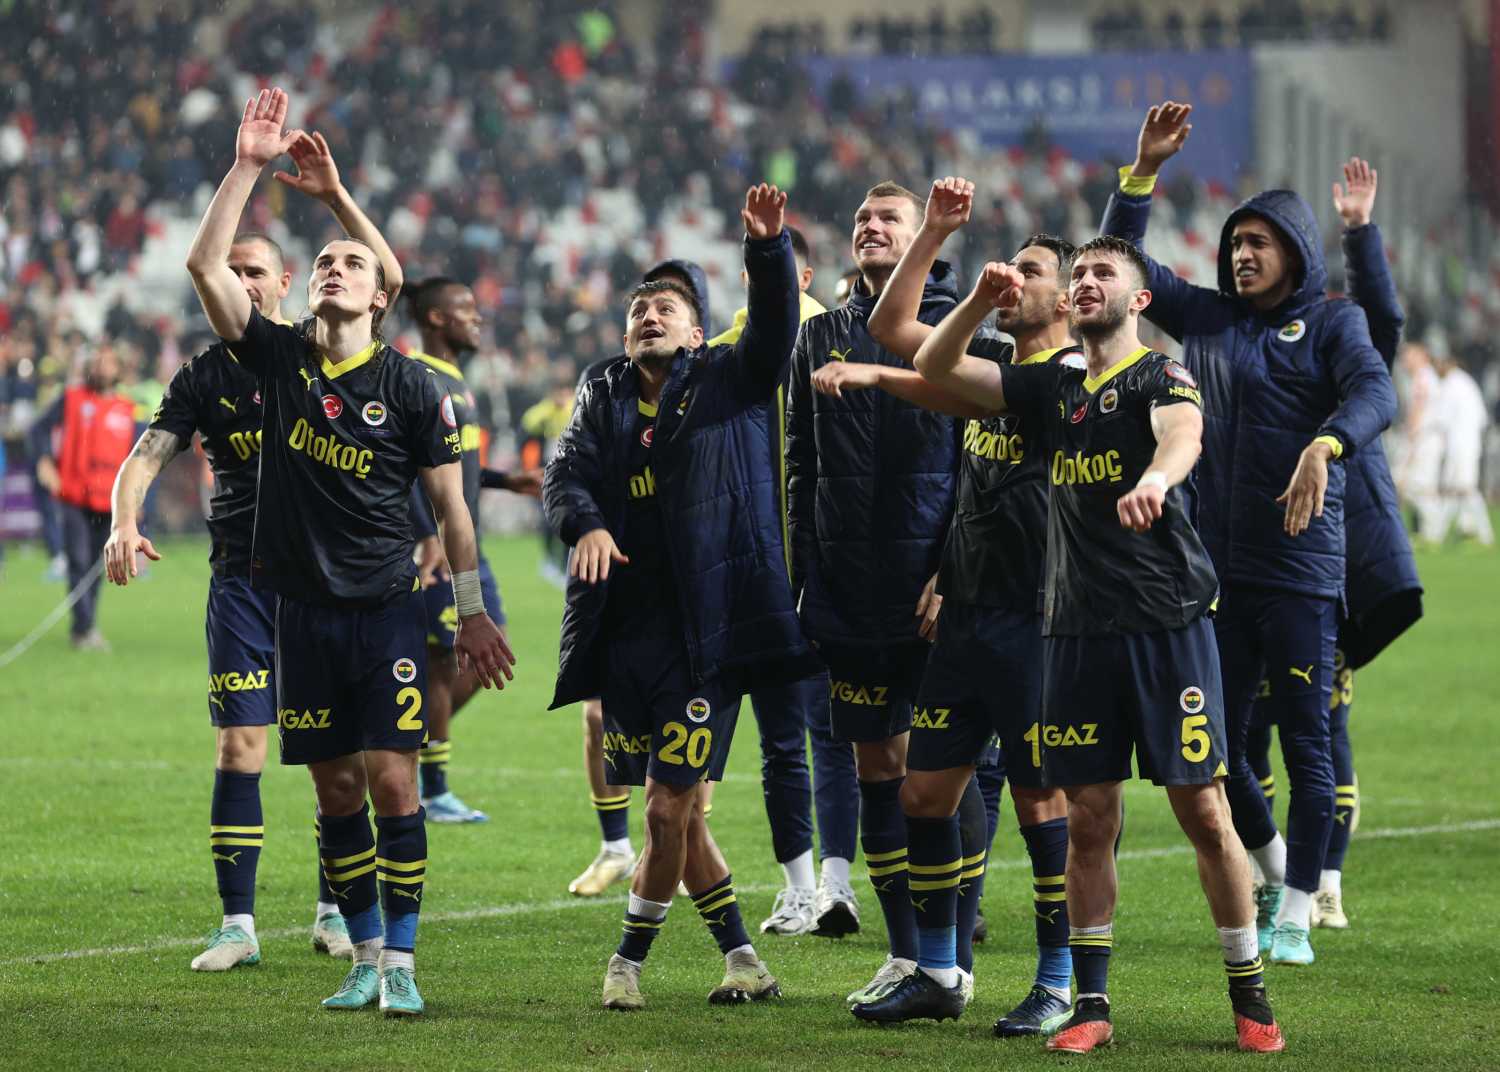 Transferde Real Madrid modeli! Fenerbahçe’de Brezilya çıkarması... Scoutlar devrede